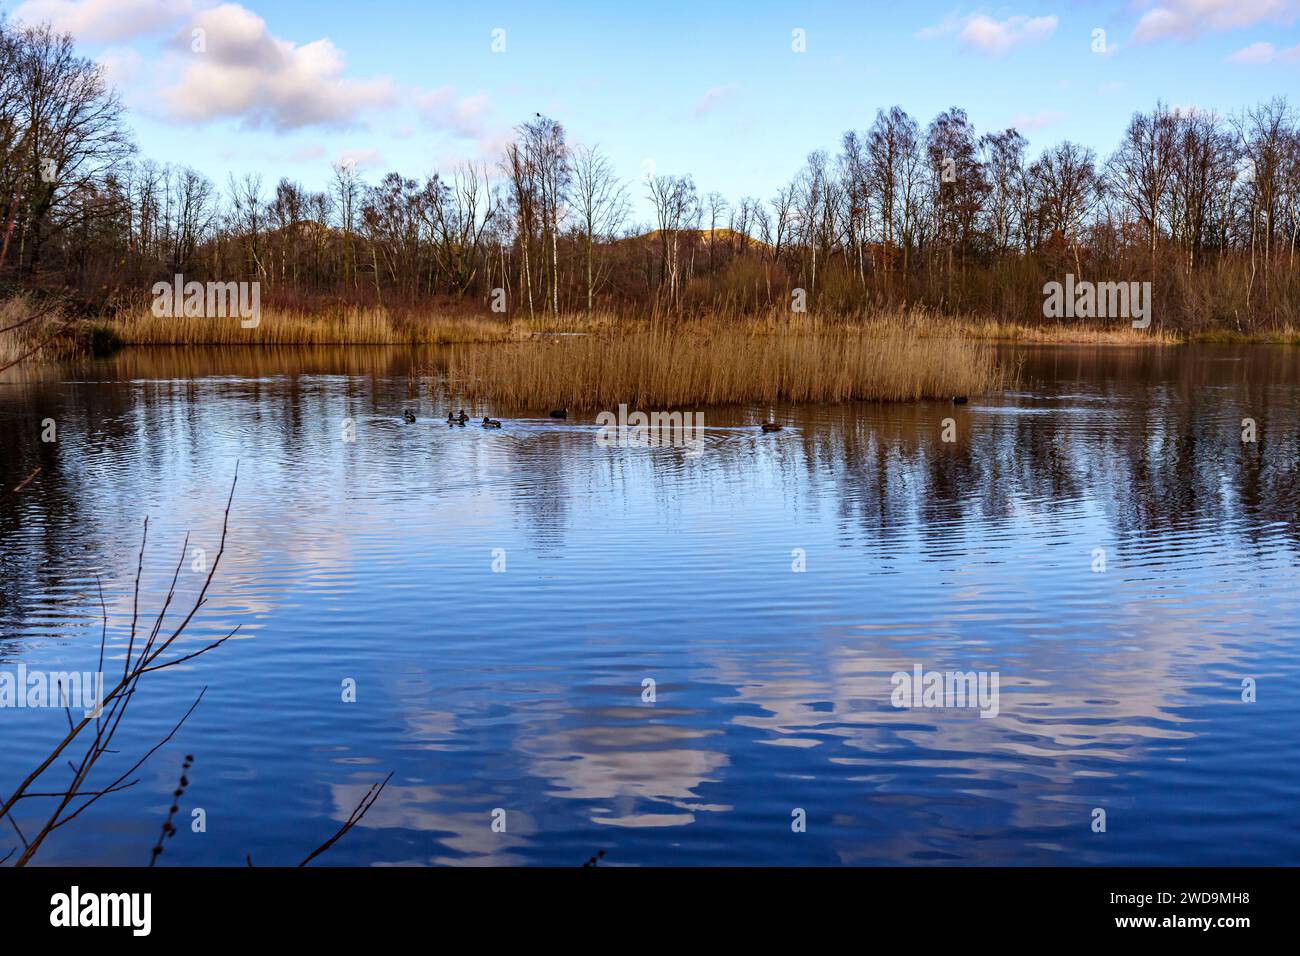 Cielo blu con nuvole bianche riflesse sulla superficie del lago, erba selvaggia e alberi nudi sullo sfondo, riflessi a specchio, anatre che nuotano, Thor Park - Hoge Kem Foto Stock